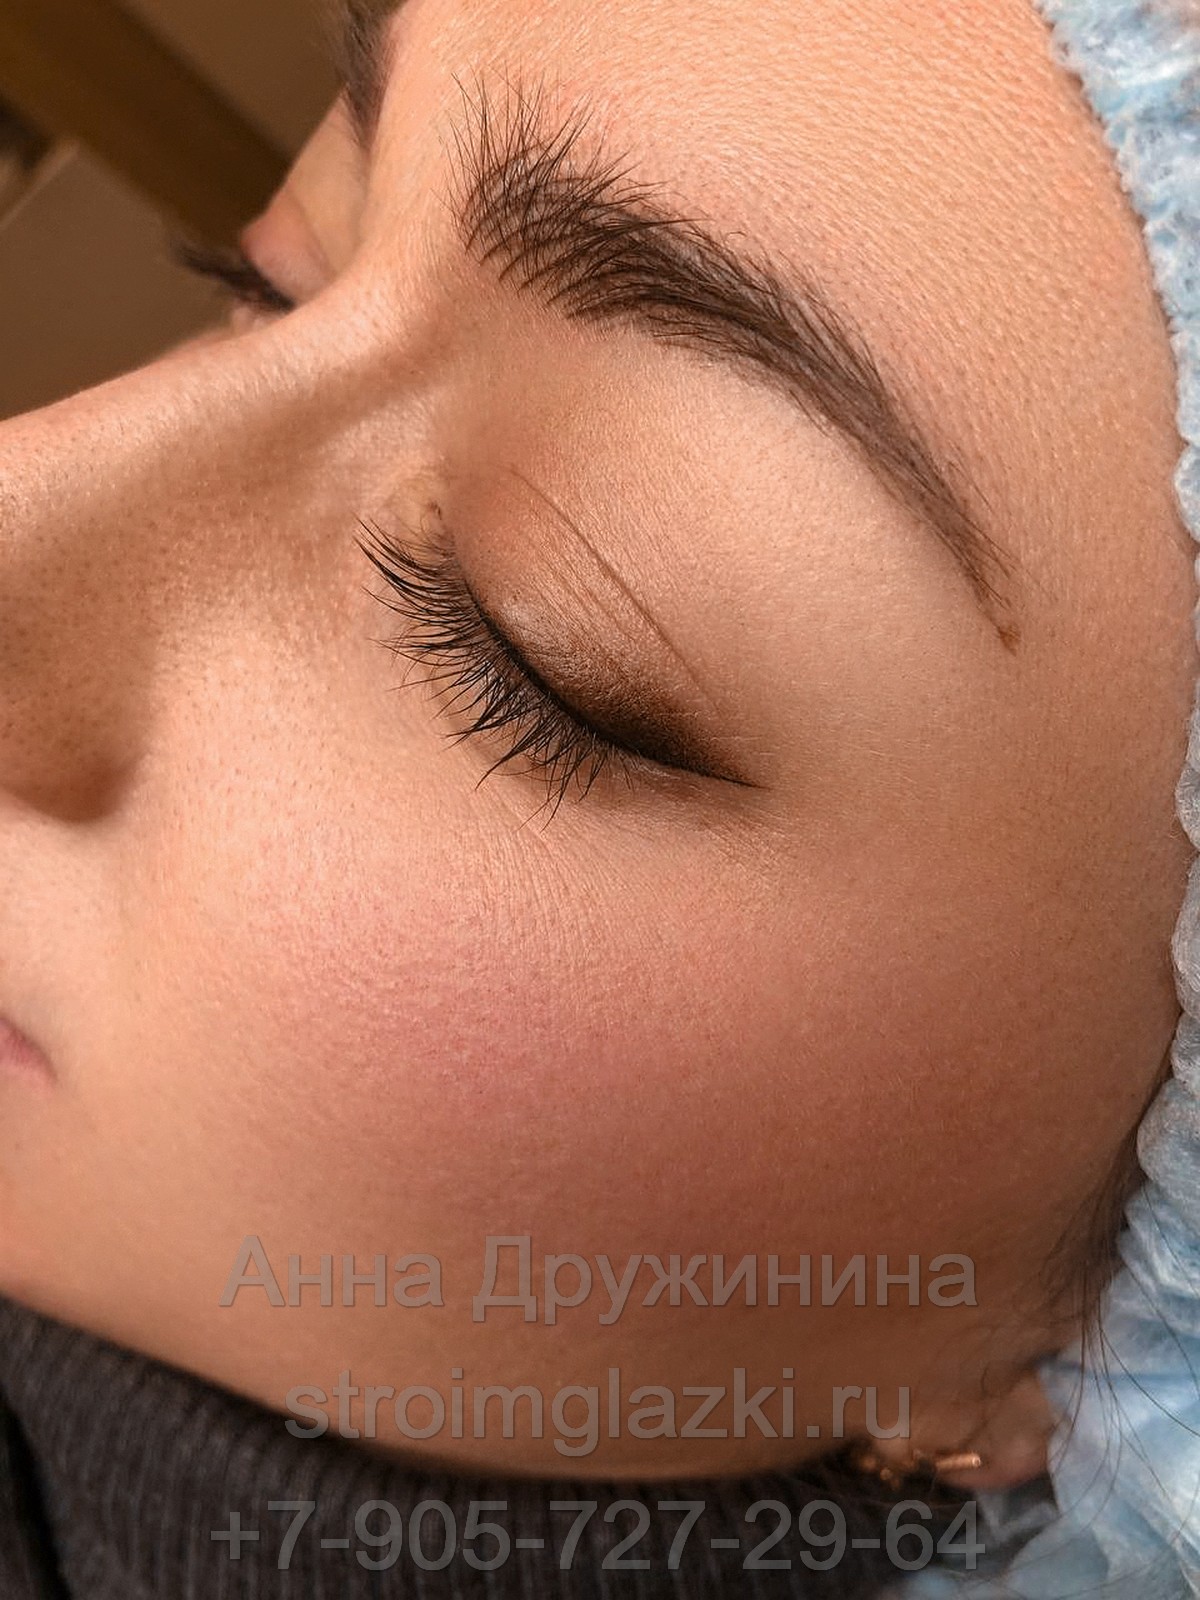 татуаж стрелки на глазах, выполненный в Салоне Красоты Строимглазки Анны Дружининой